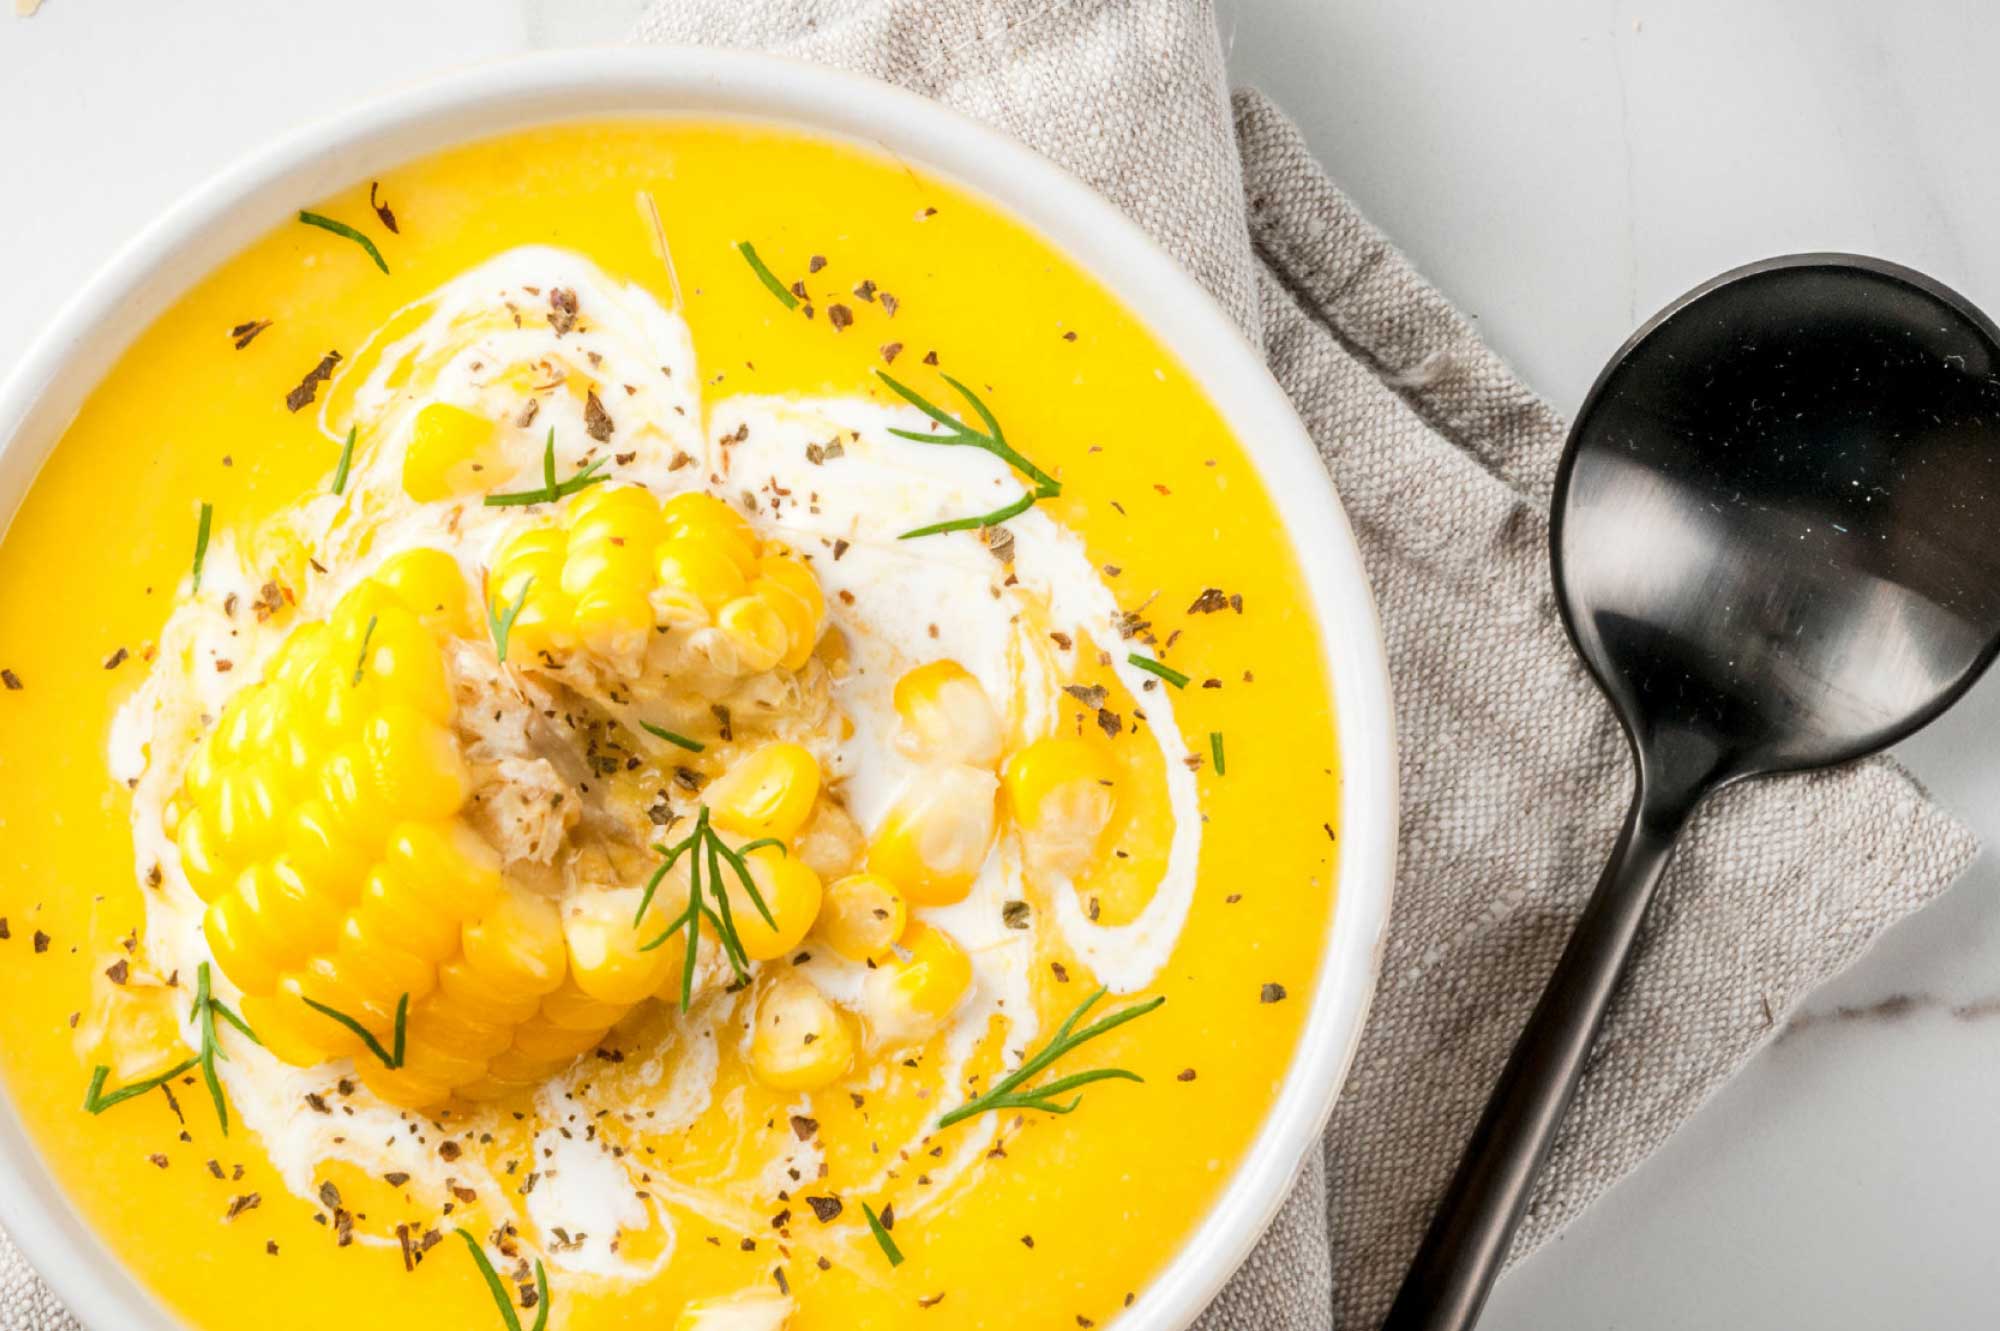 Recept soepen maissoep met room dille en chilivlokken | Bedrijfscatering | De Groene Artisanen